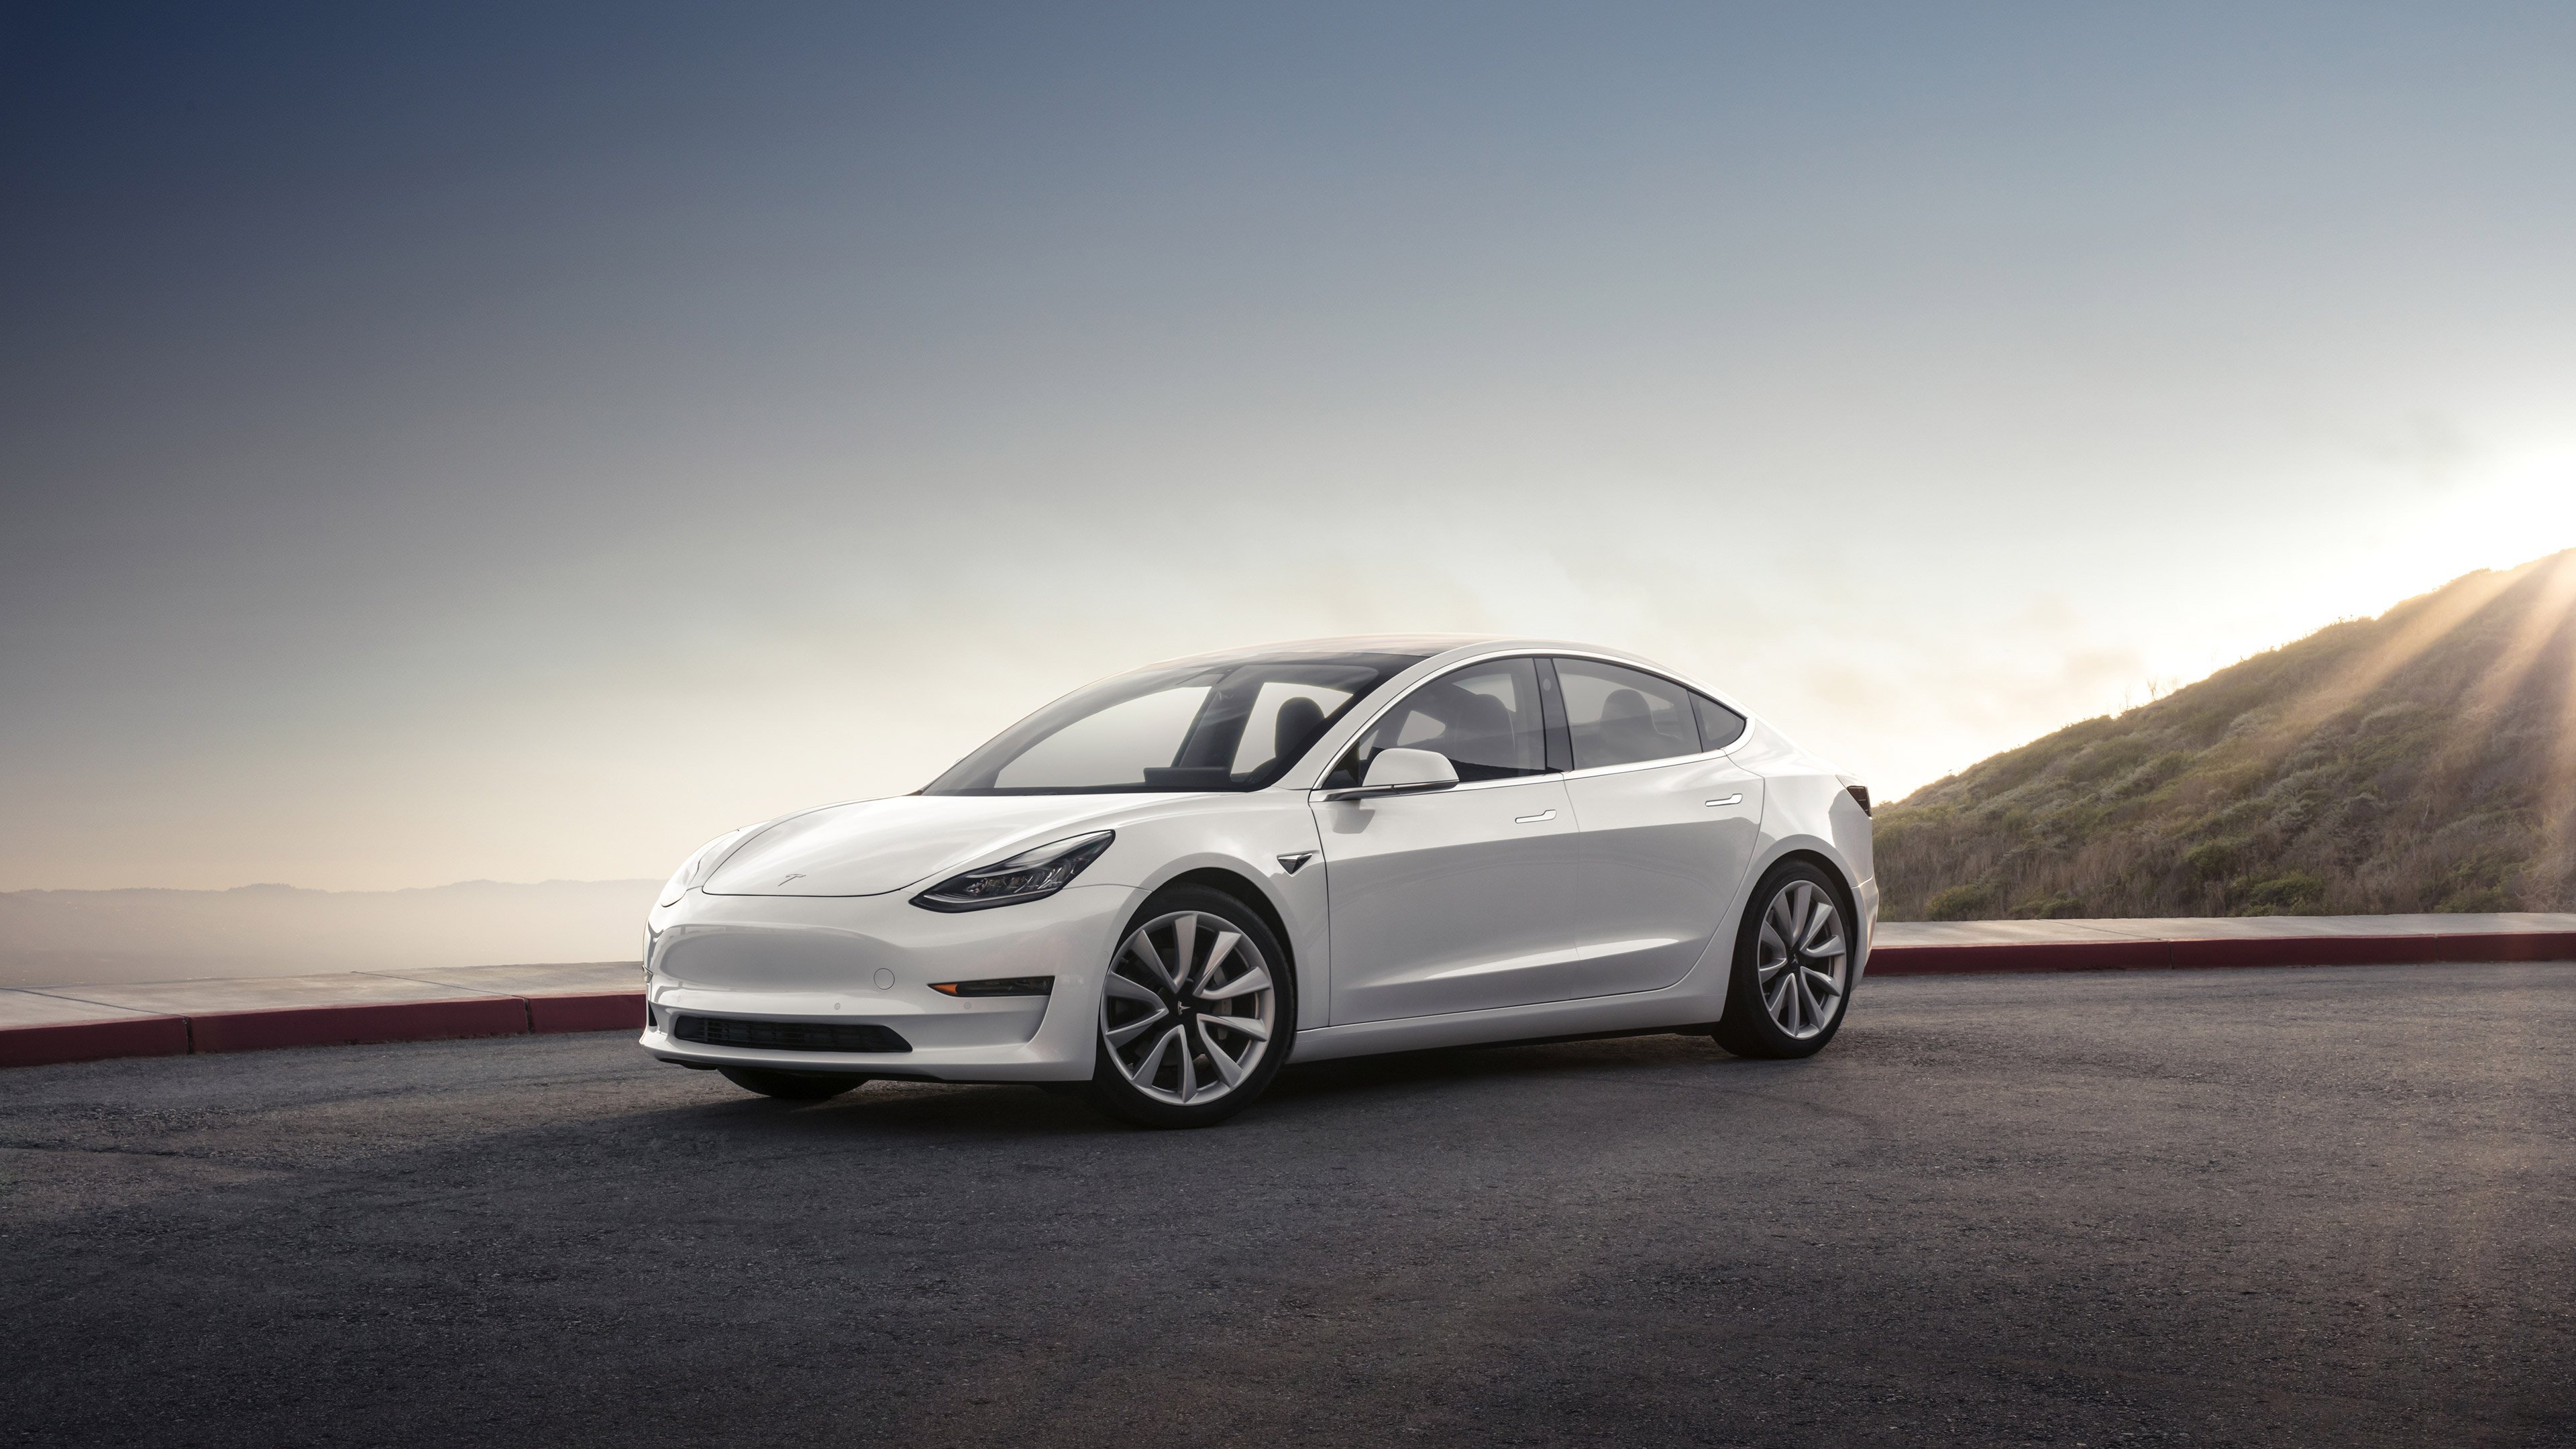 Tesla Model 3 HD Cars, 4k Wallpaper, Image, Background